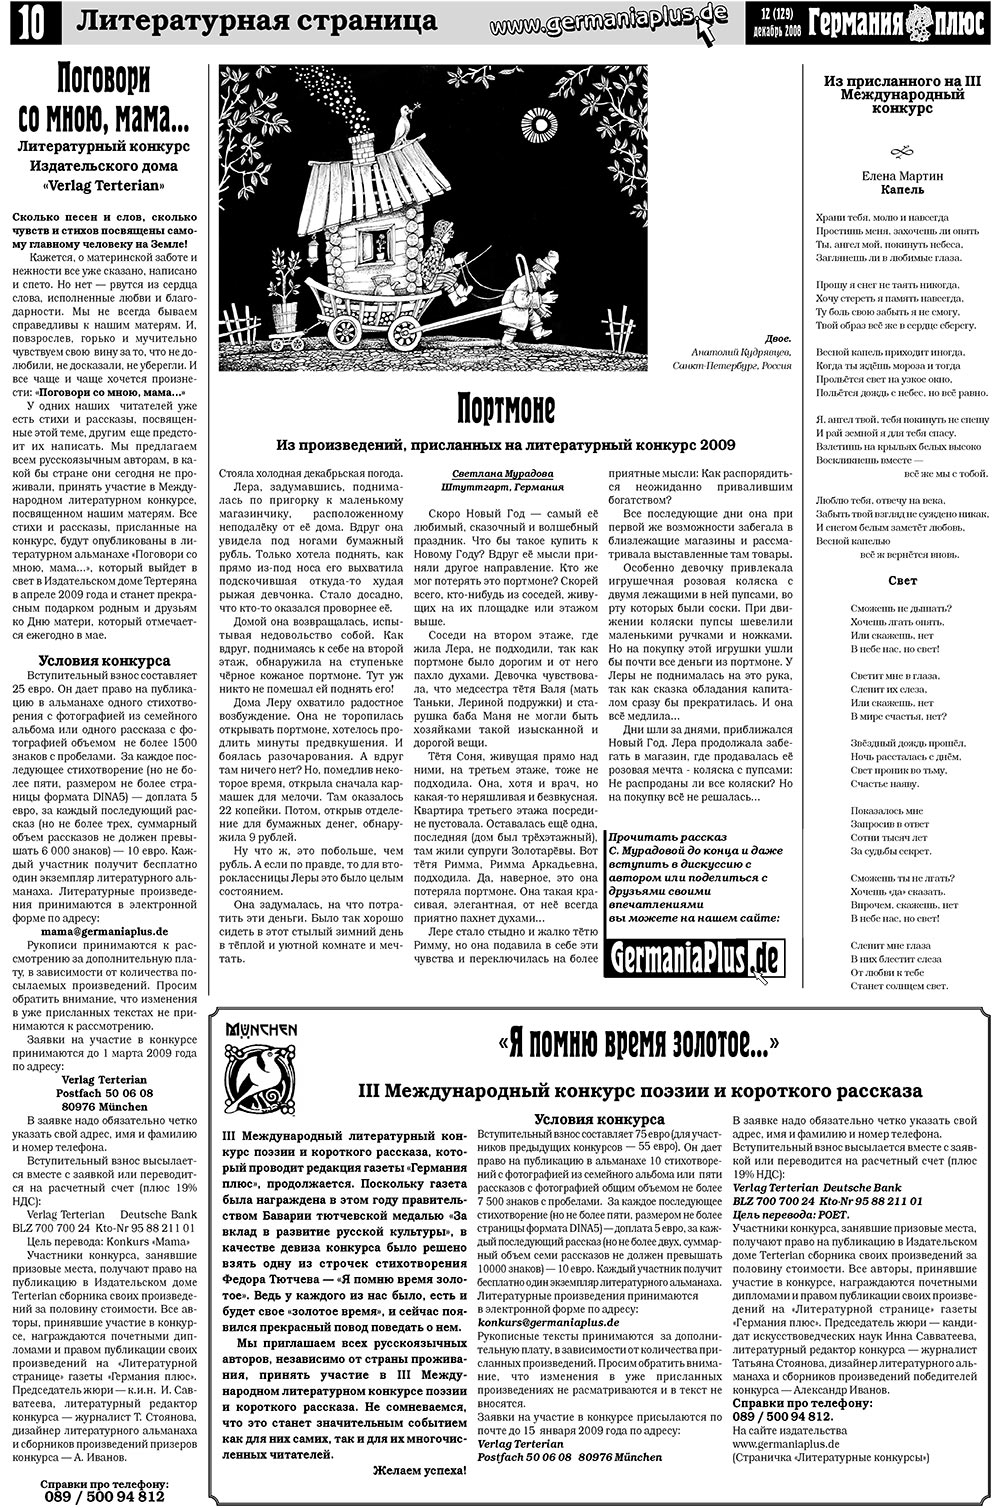 Германия плюс, газета. 2008 №12 стр.14